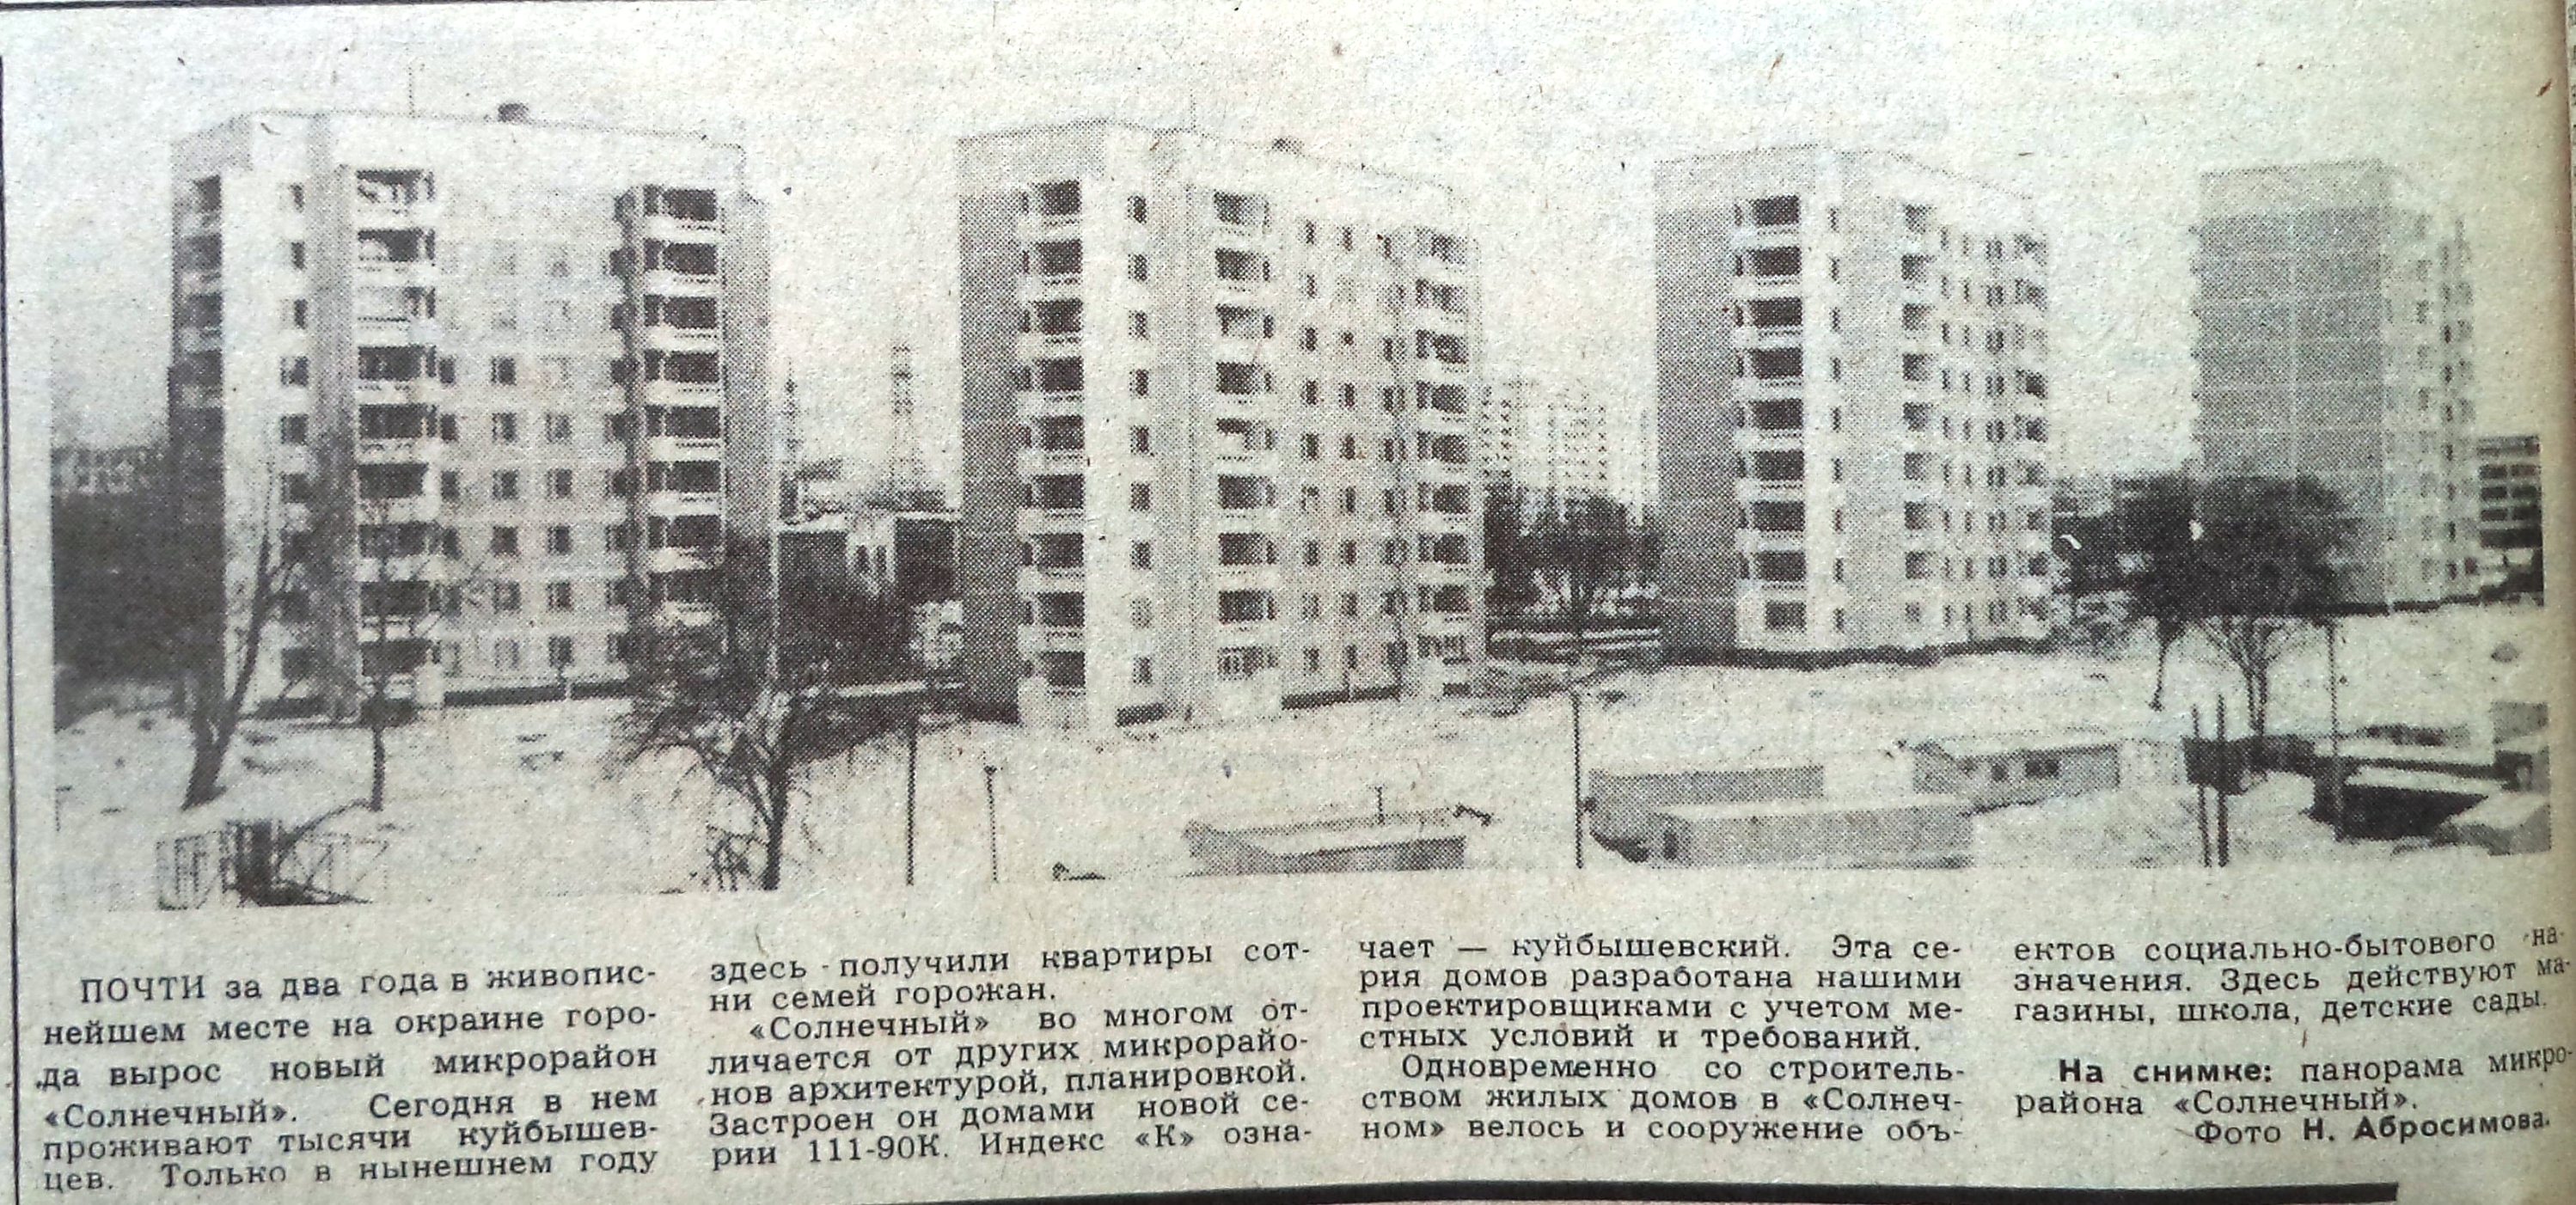 Шверника-ФОТО-06-ВЗя-1988-12-14-фото домов по Шверника-min